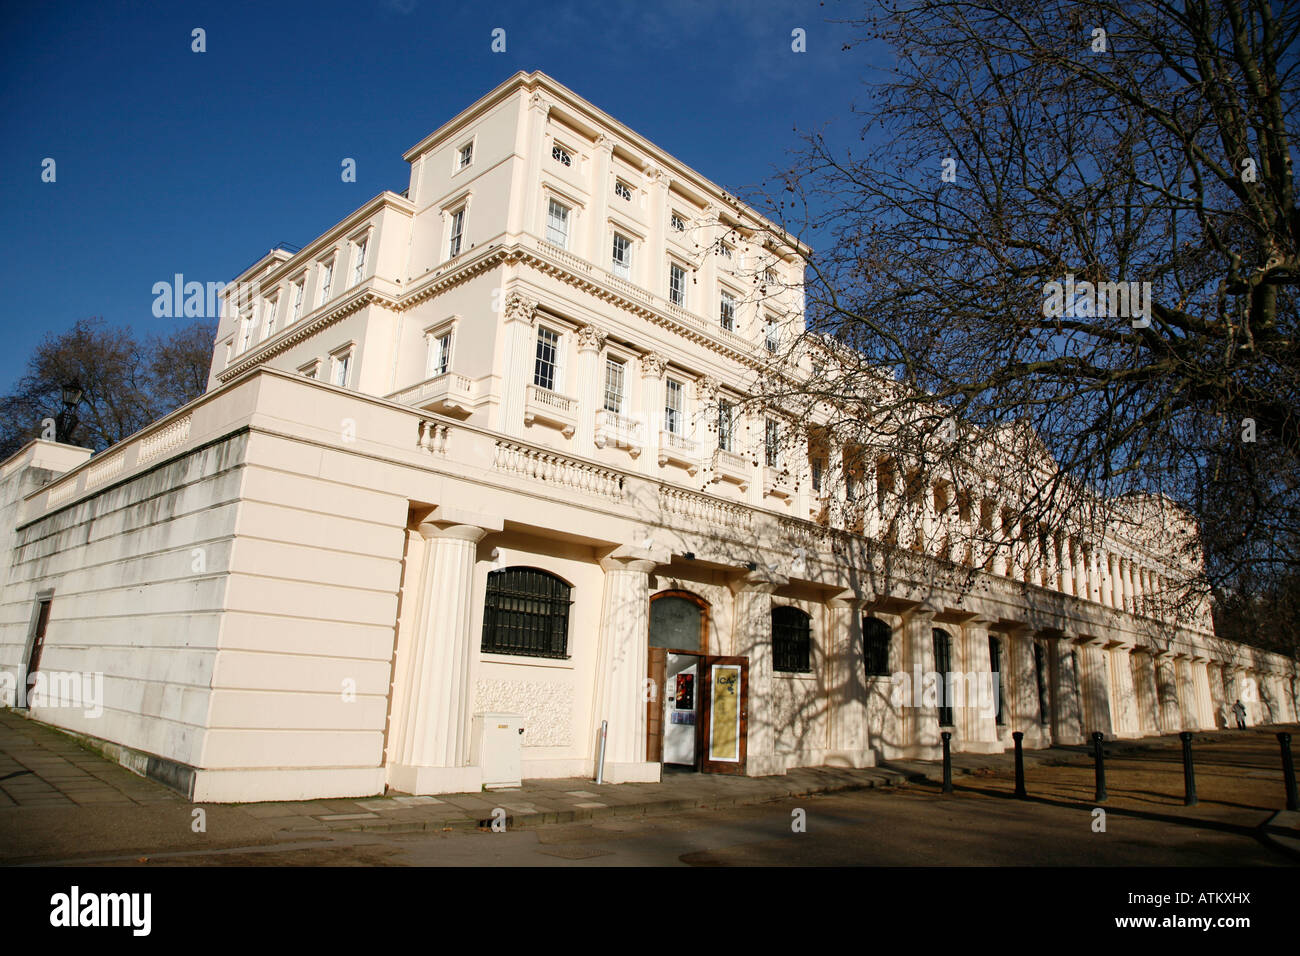 L'Institute of Contemporary Arts (ICA) sur Carlton House Terrace, St James, Londres Banque D'Images